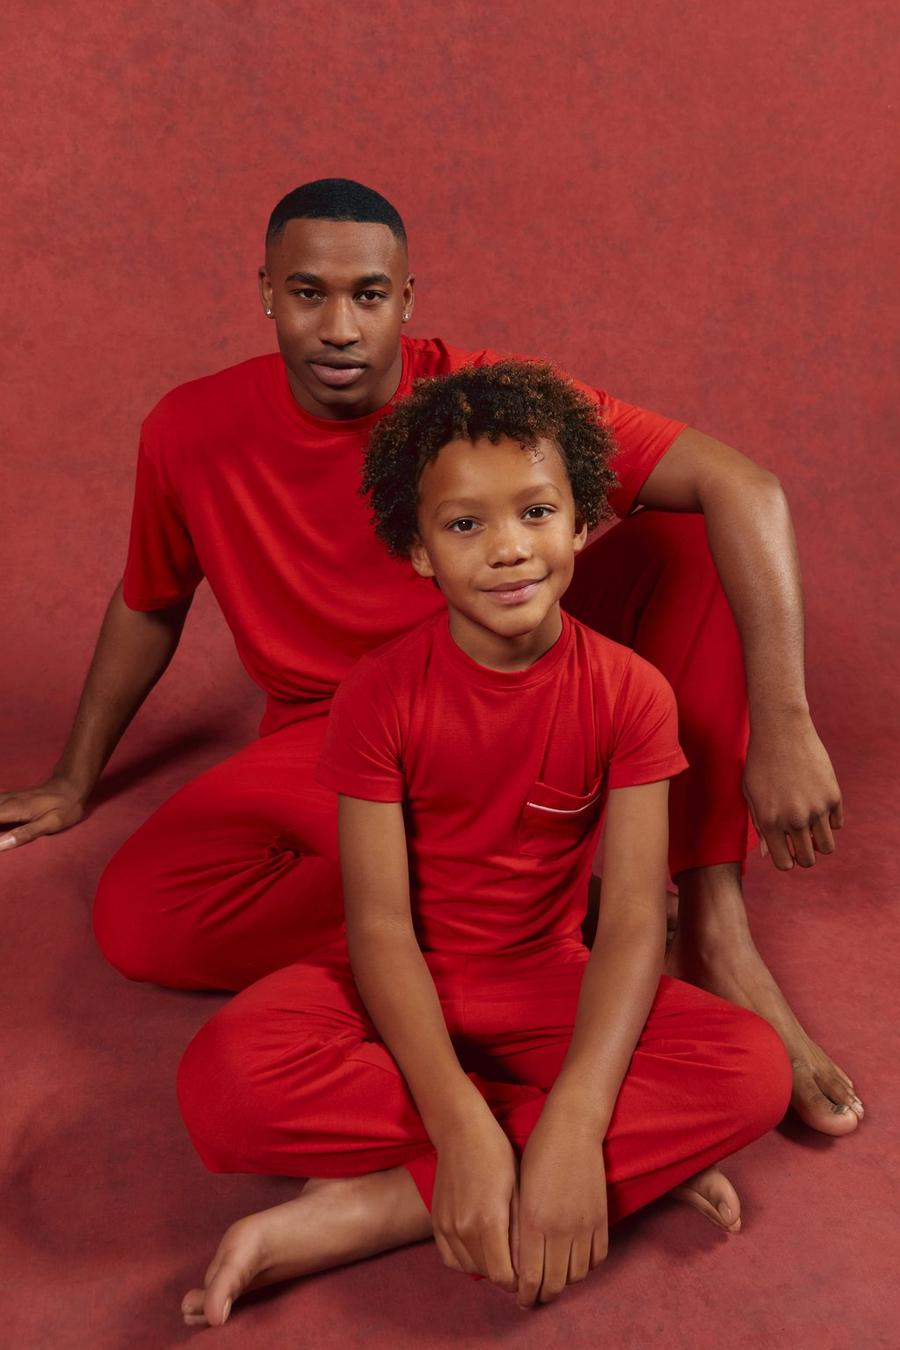 Family Christmas Pyjamas  Couples & Matching Christmas PJs